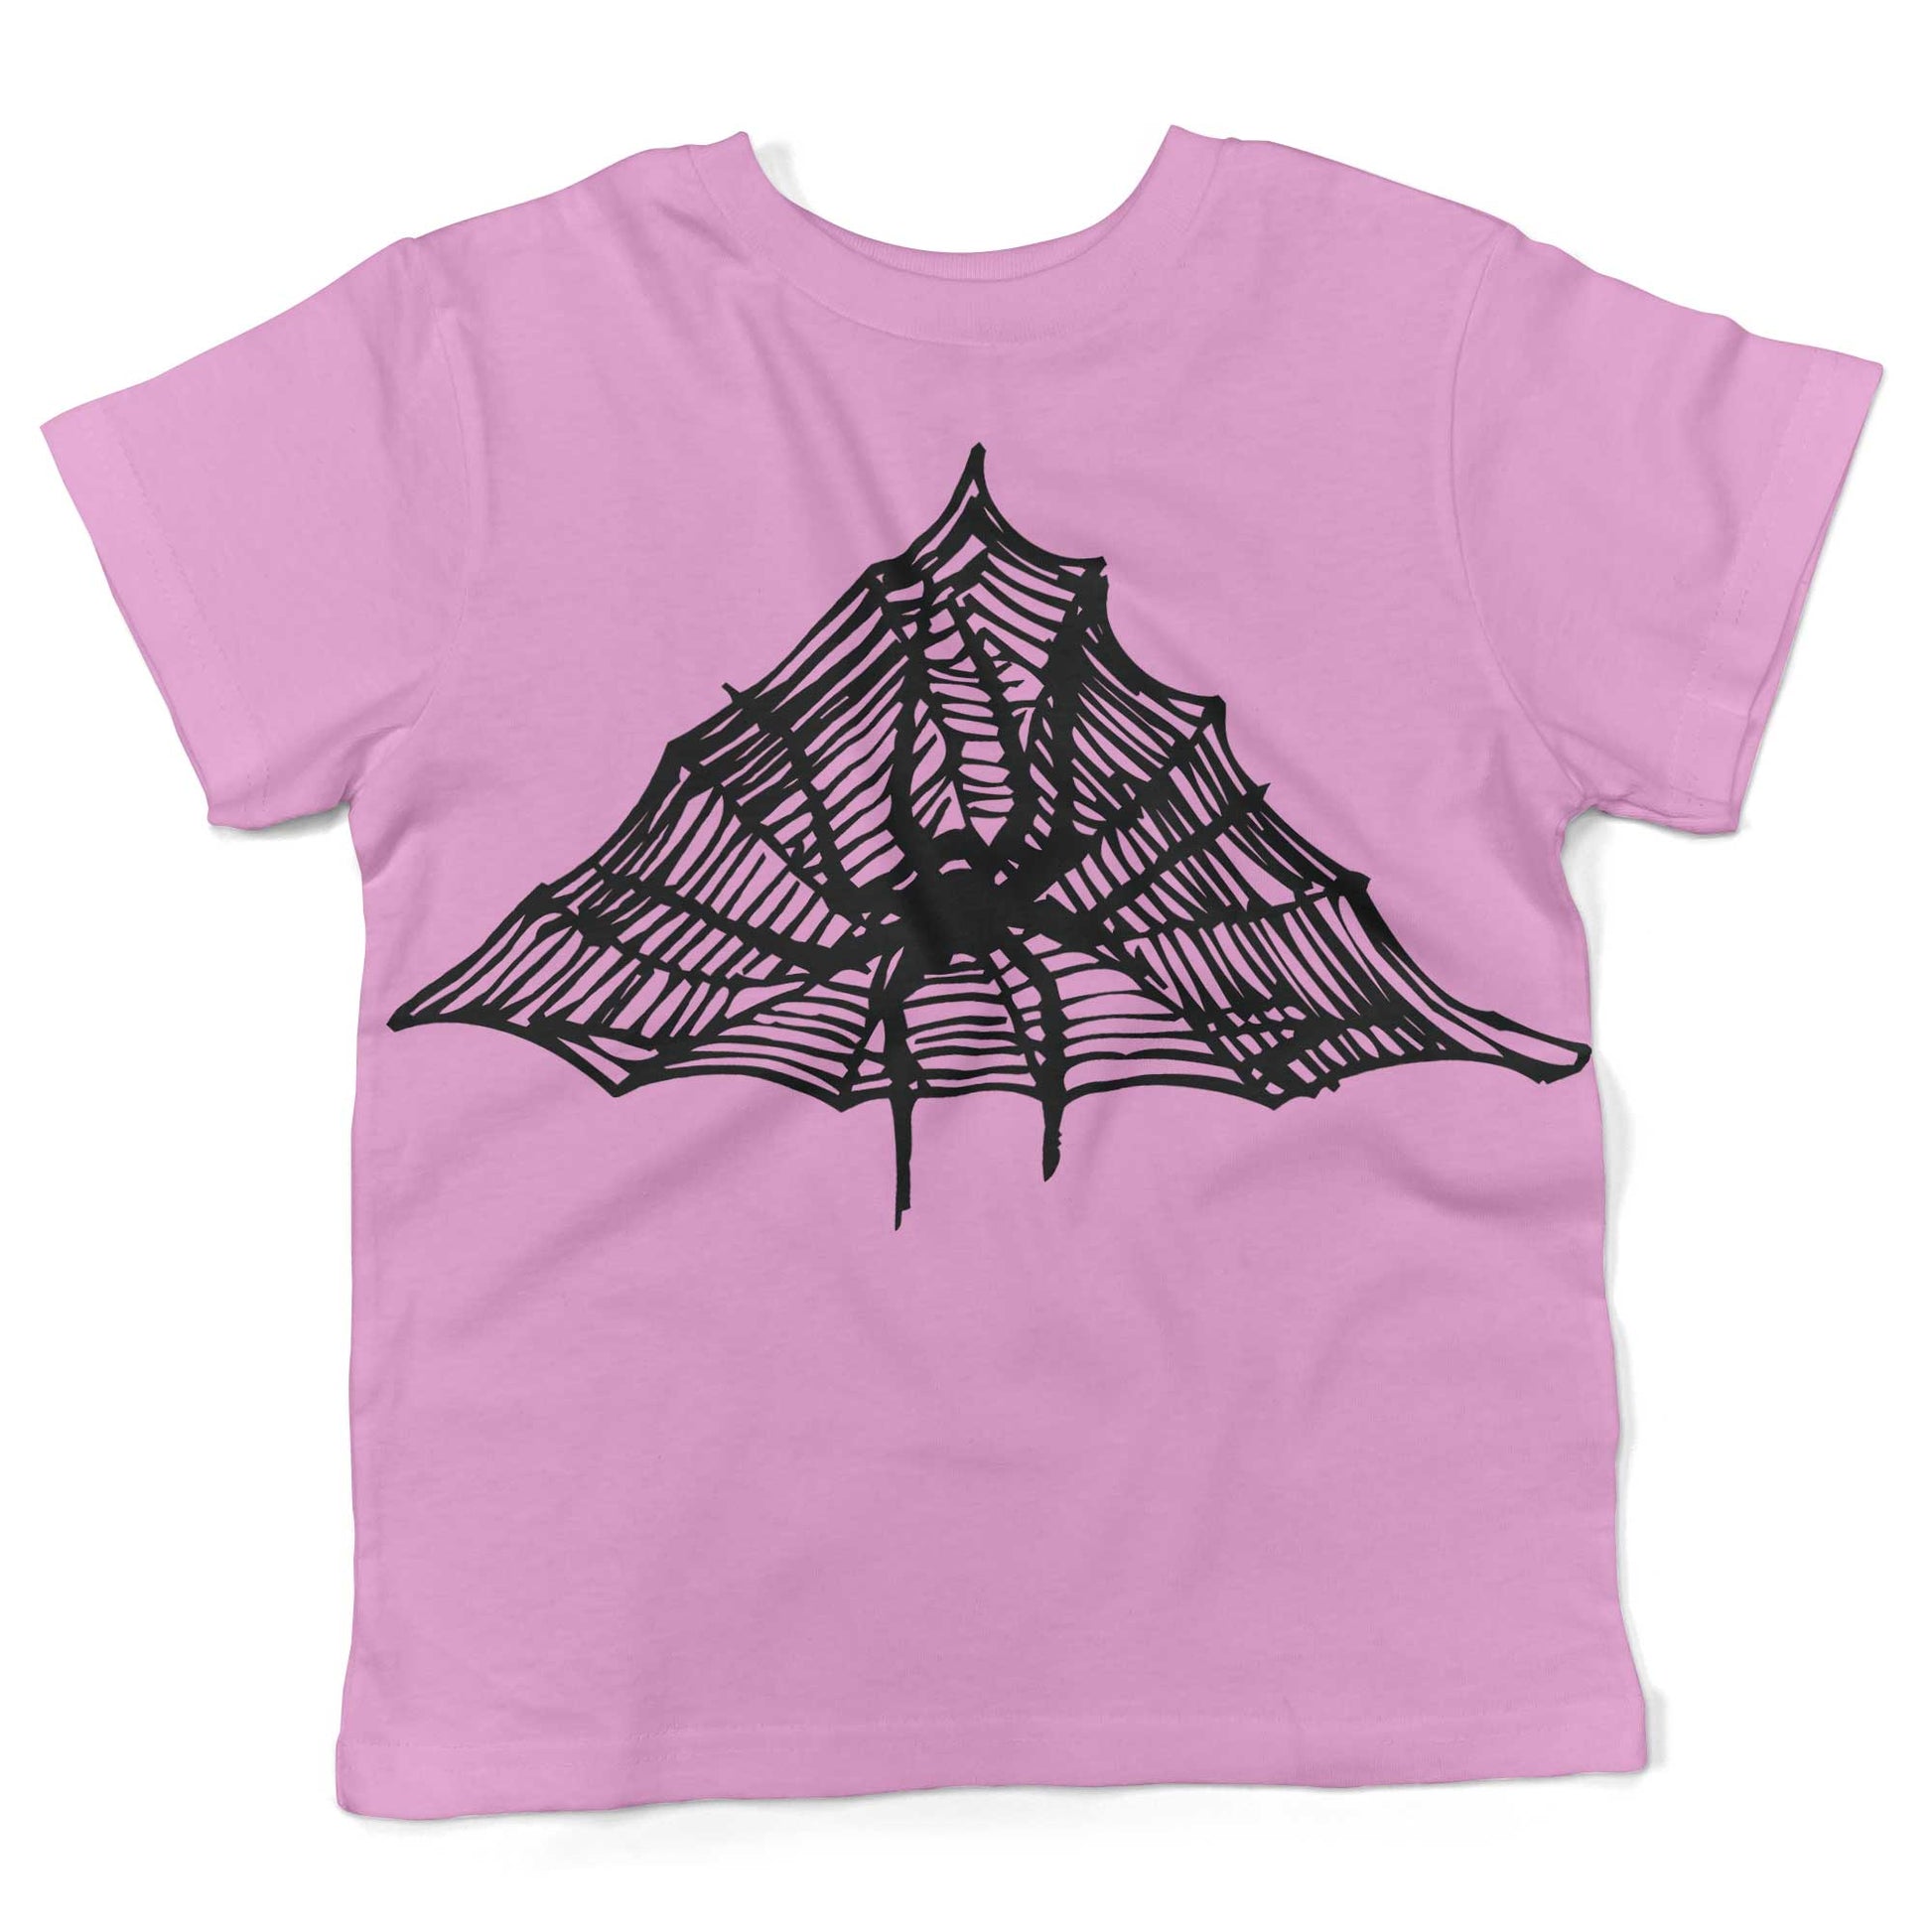 Spiderweb Toddler Shirt-Organic Pink-2T